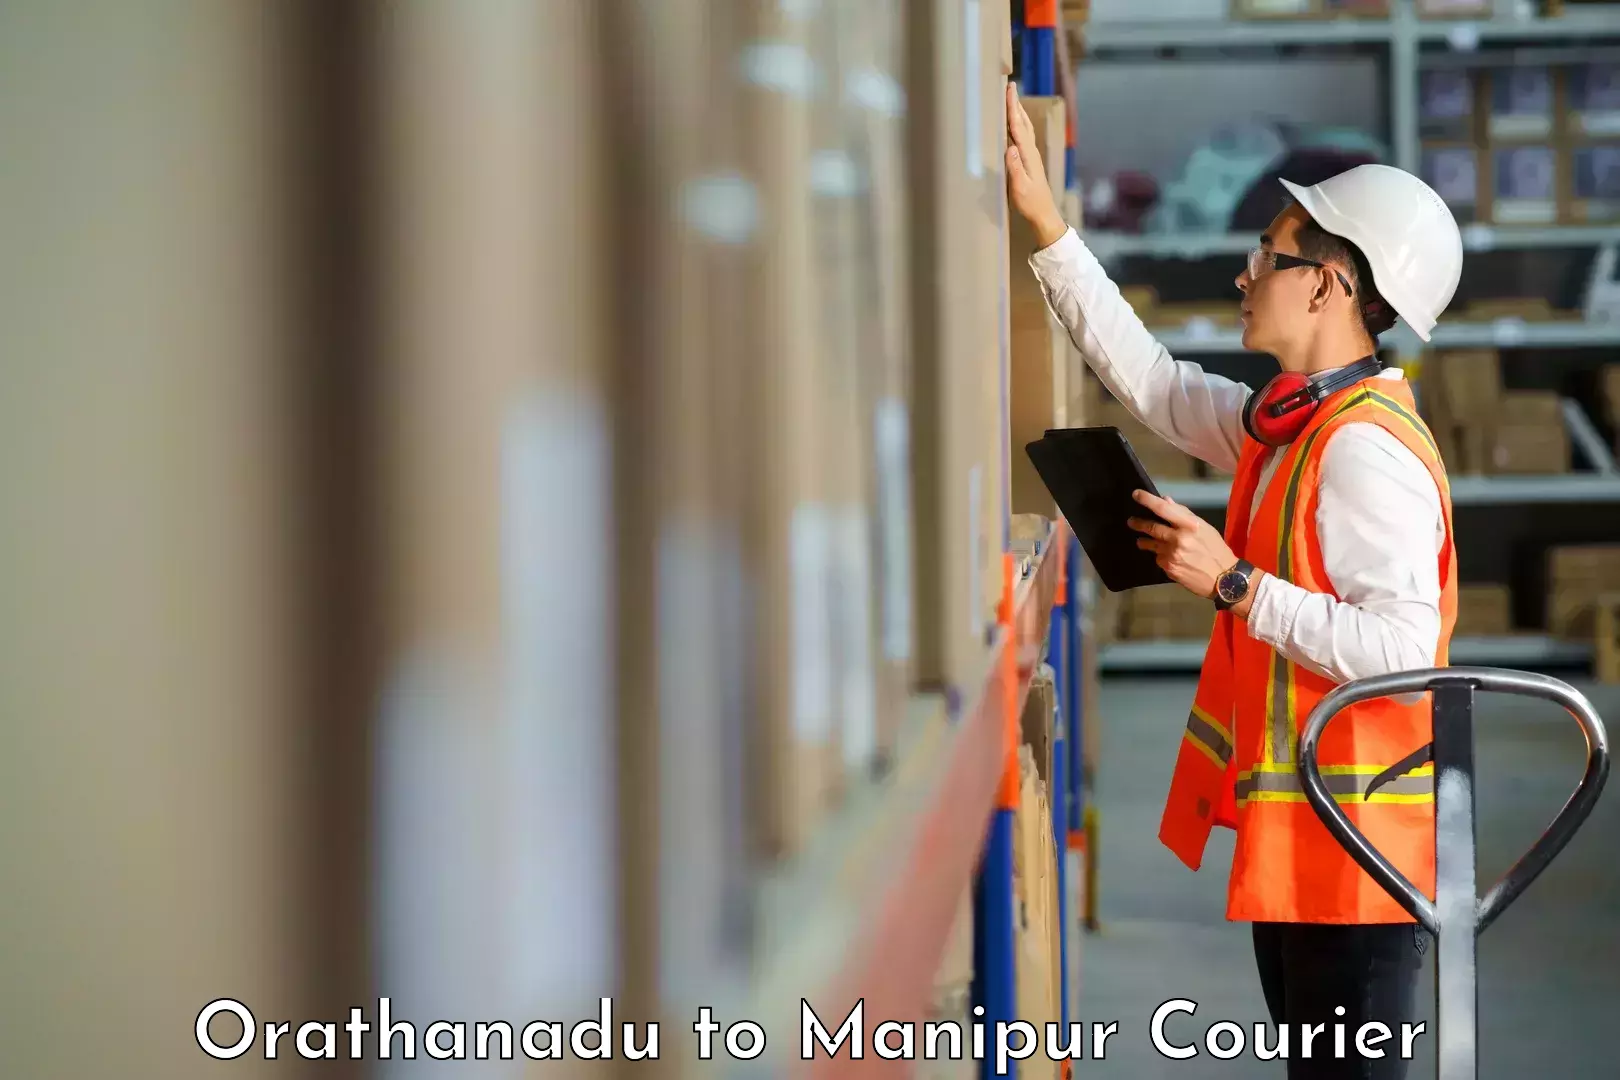 International courier networks Orathanadu to Manipur